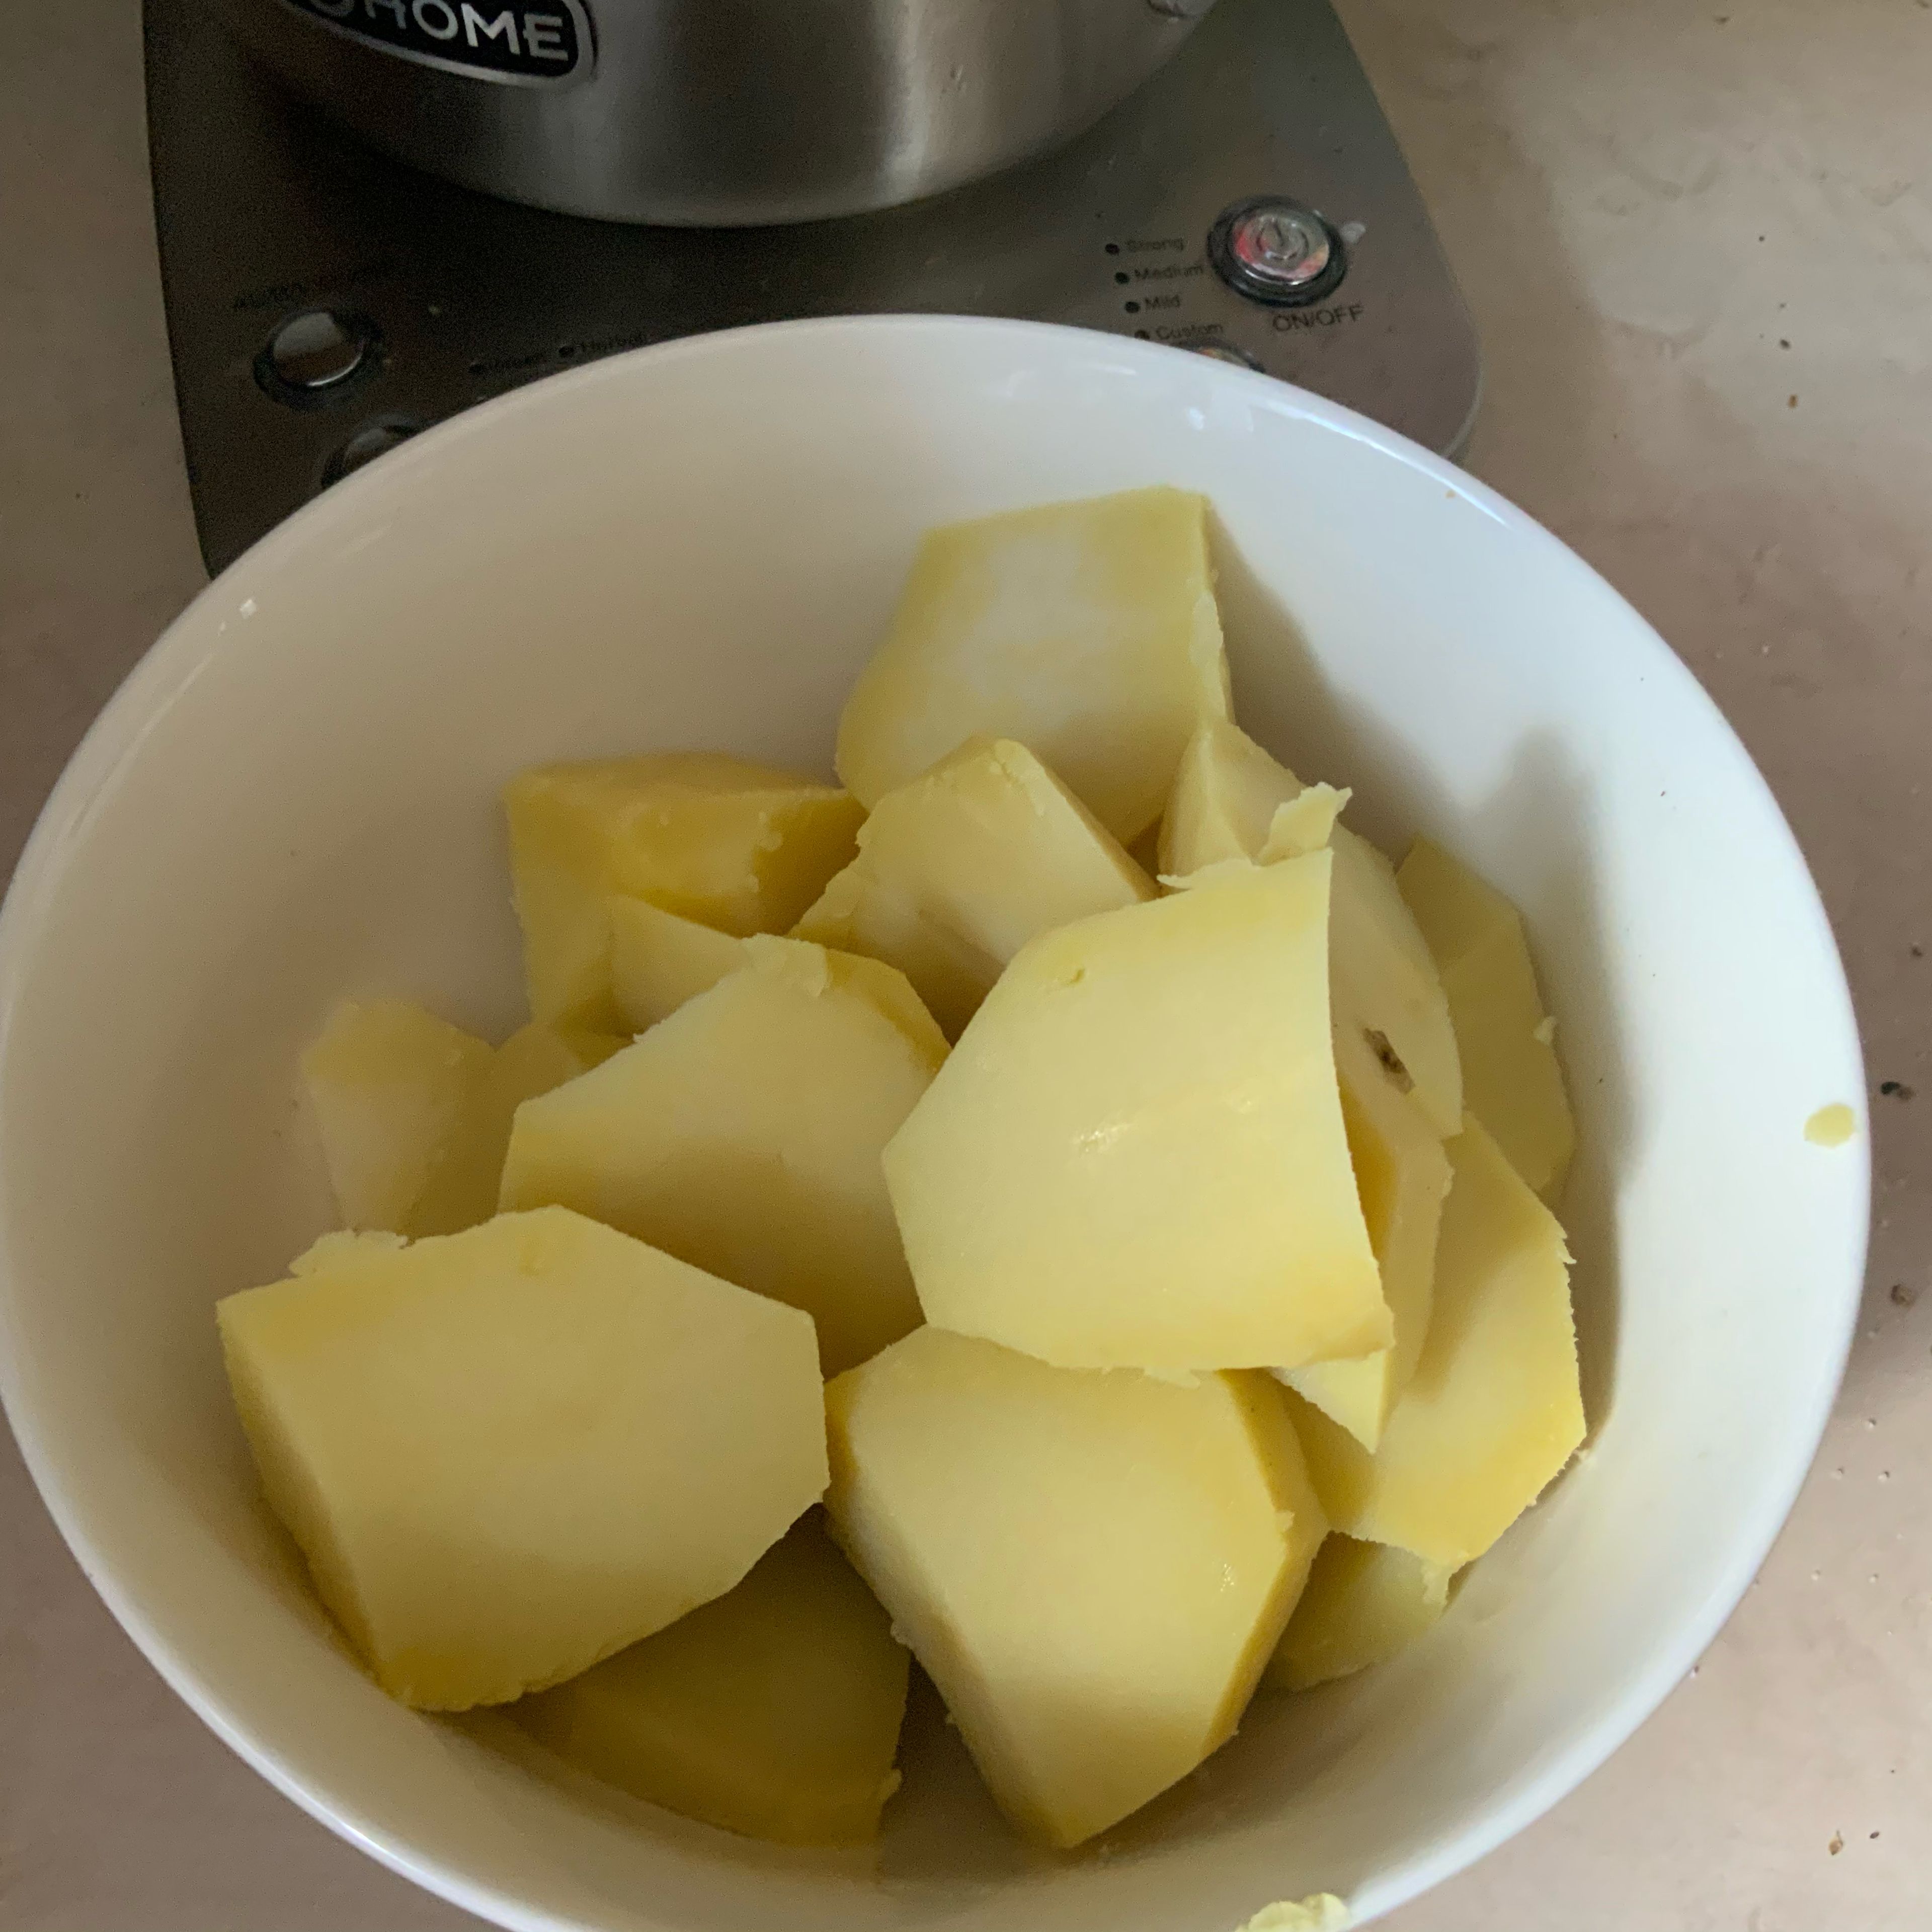 Kartoffeln kochen, schälen und in kleine Wedgets schneiden. Auch „neue“ Kartoffeln sind dazu lecker. Ich mache Bratkartoffeln, weil ich noch gekochte vom Vortag hatte.